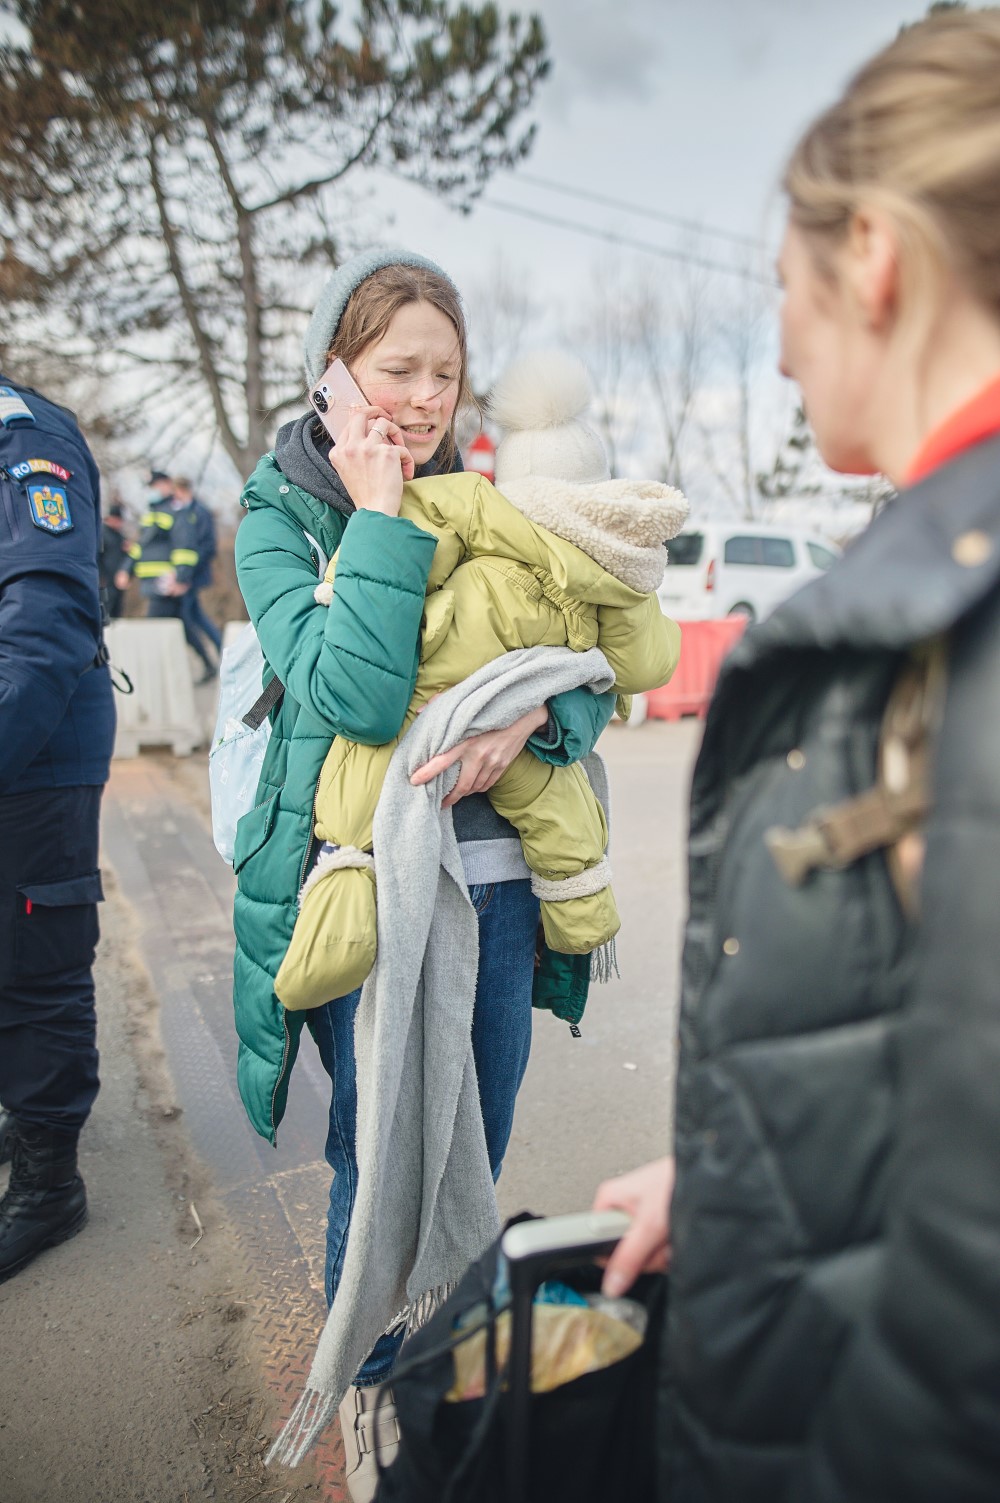 烏克蘭難民著急求援